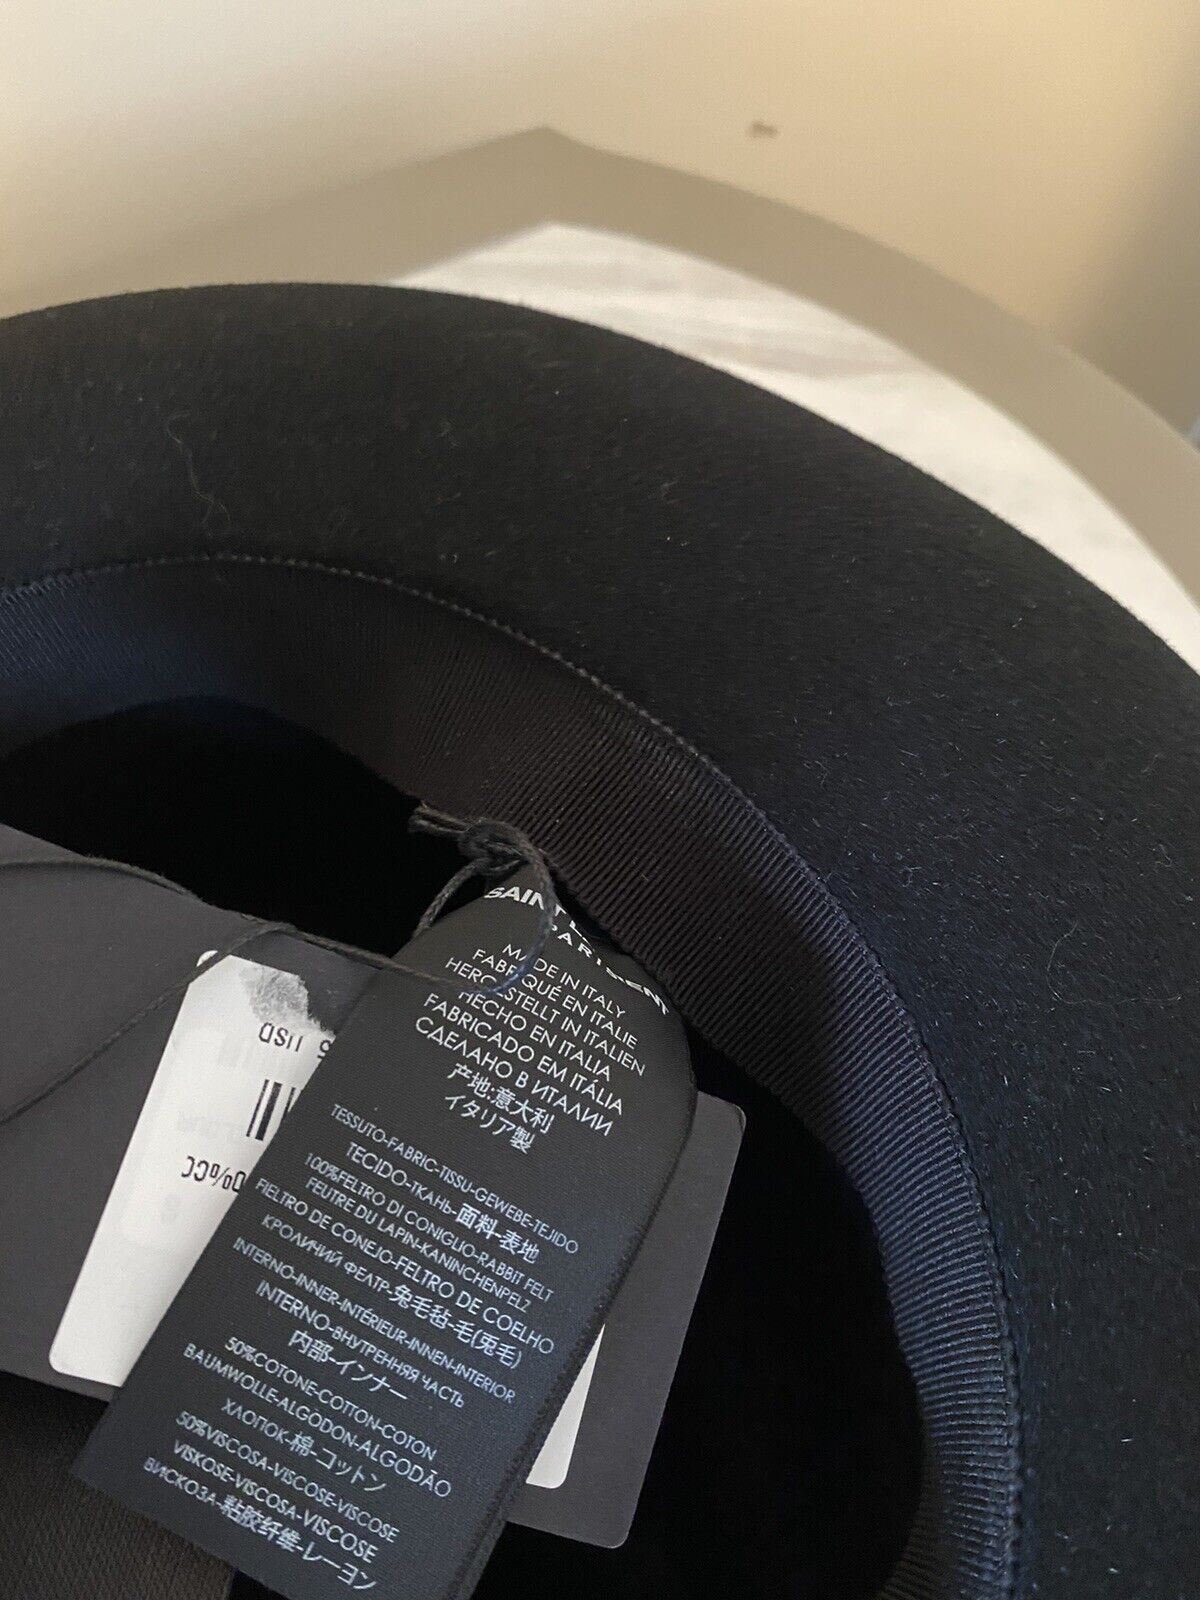 Neu mit Etikett: 995 $ Saint Laurent Herren-Fedora-Hut aus Kaninchenfilz, Schwarz, Größe S, Italien